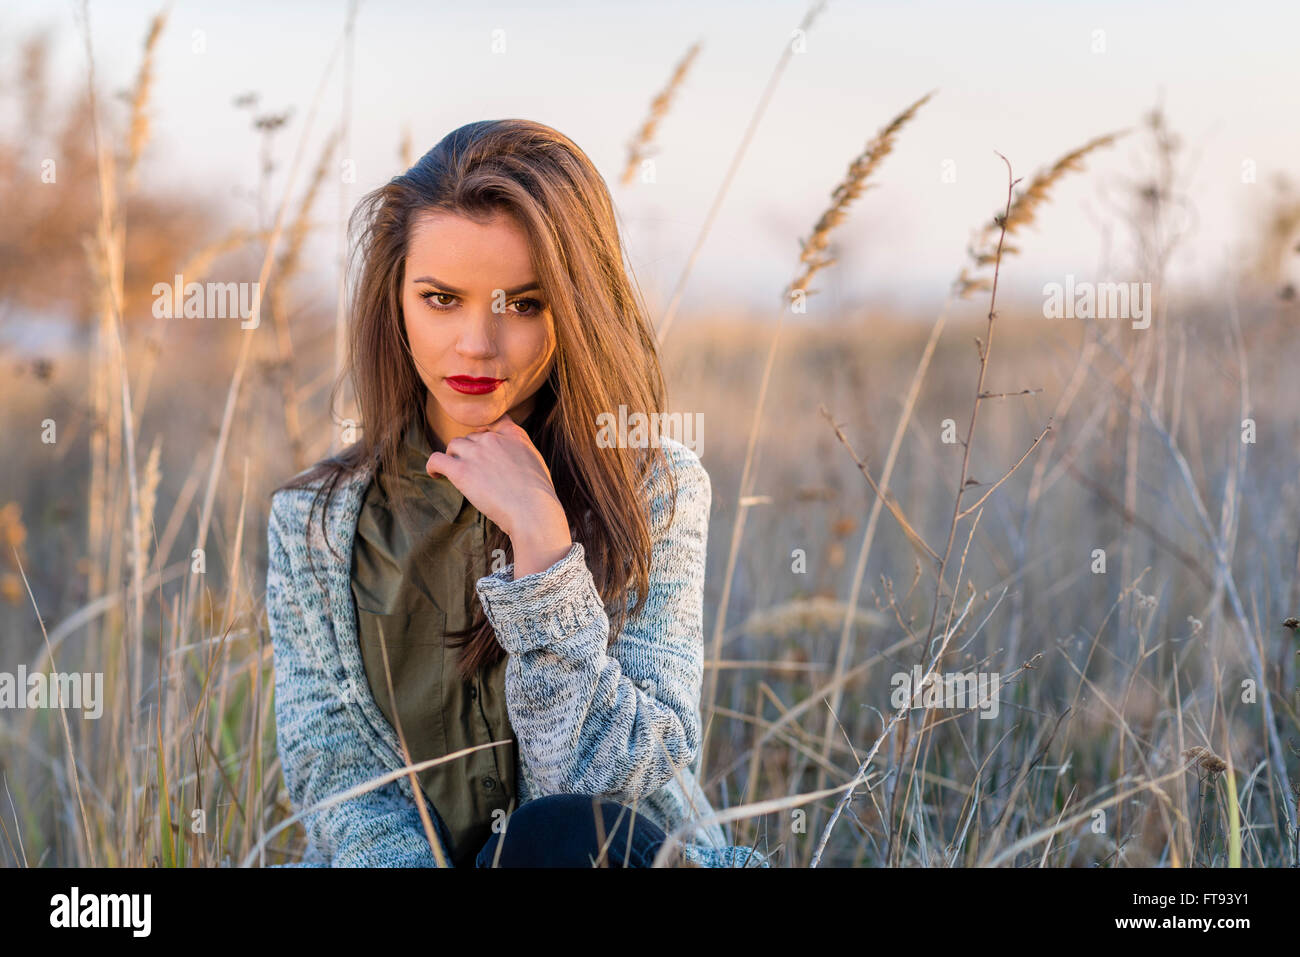 Selbstbewusst aussehen. Ein schöne Teenager selbst zuversichtlich Mädchen sitzt in einem Feld. Mädchen hat braune Augen und Haare und rote Lippen. Stockfoto